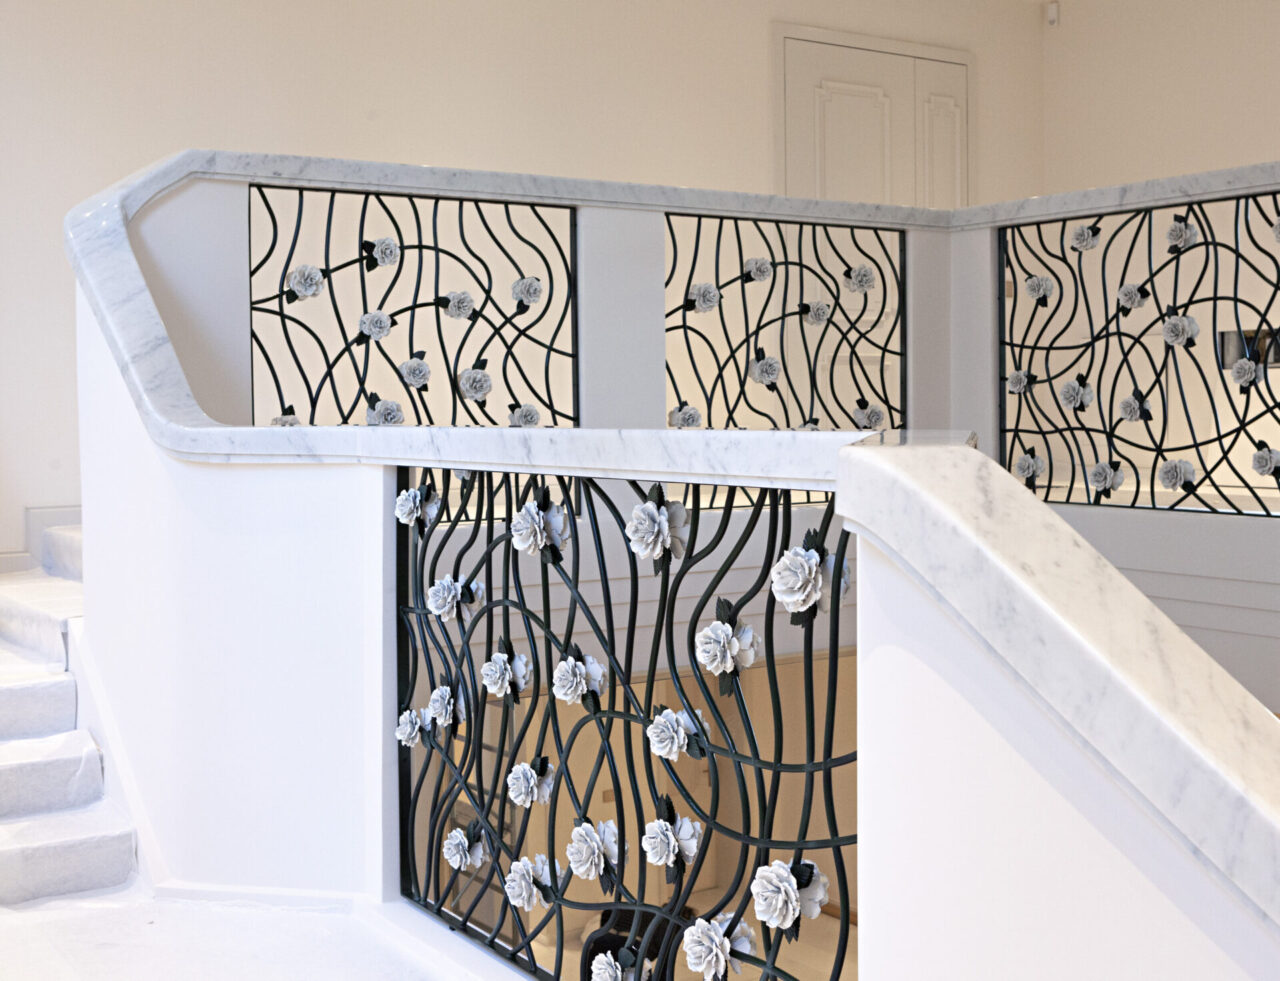 La roseraie : rampe d'escalier en fer forgé vert foncé garni de roses blanches. Design et fabrication Bertille Laguet.